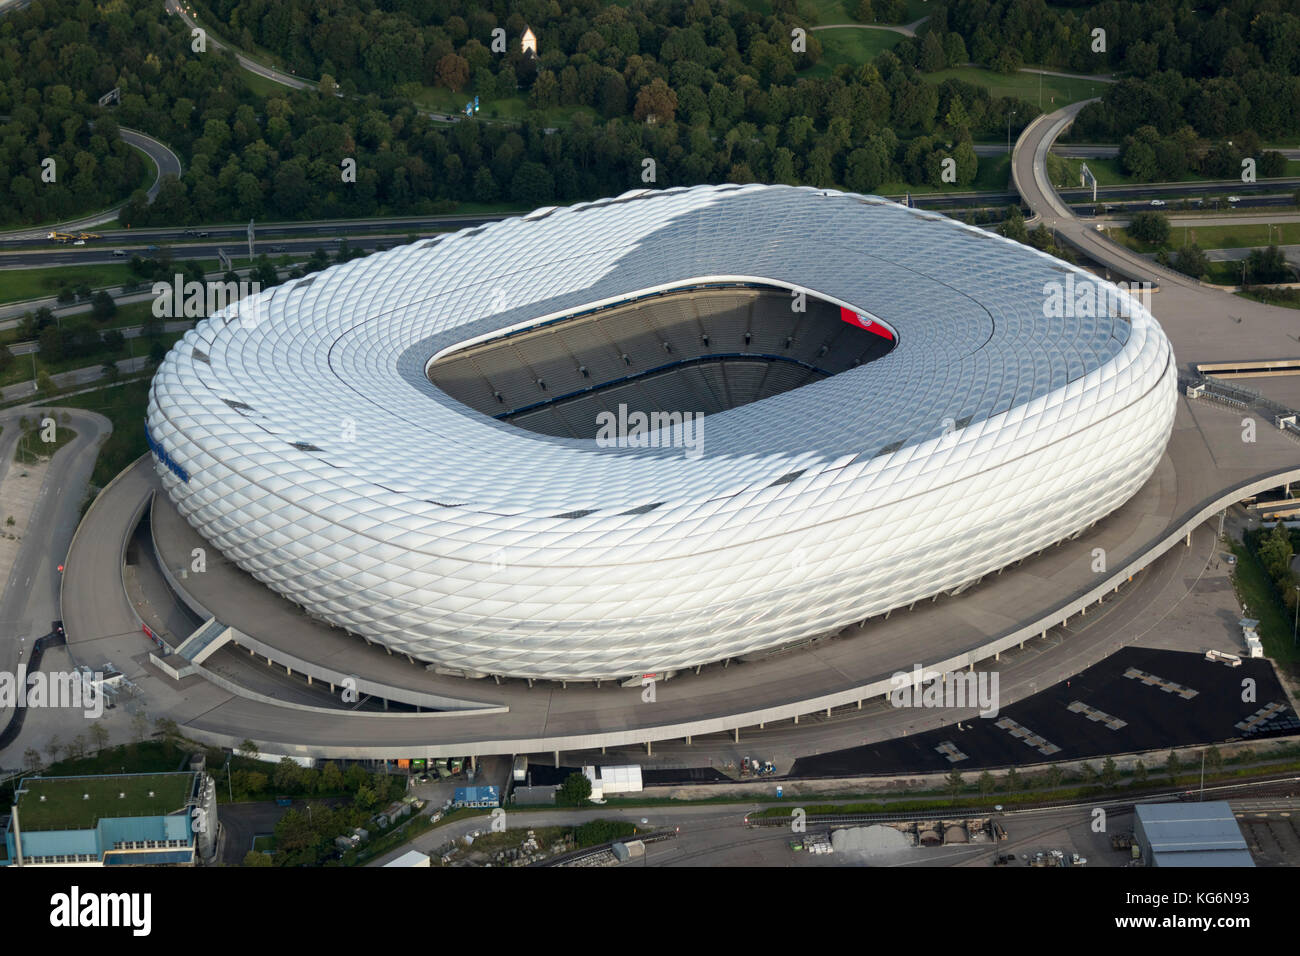 Vue aérienne du stade de football Allianz Arena, Munich, Bavière, Allemagne Banque D'Images